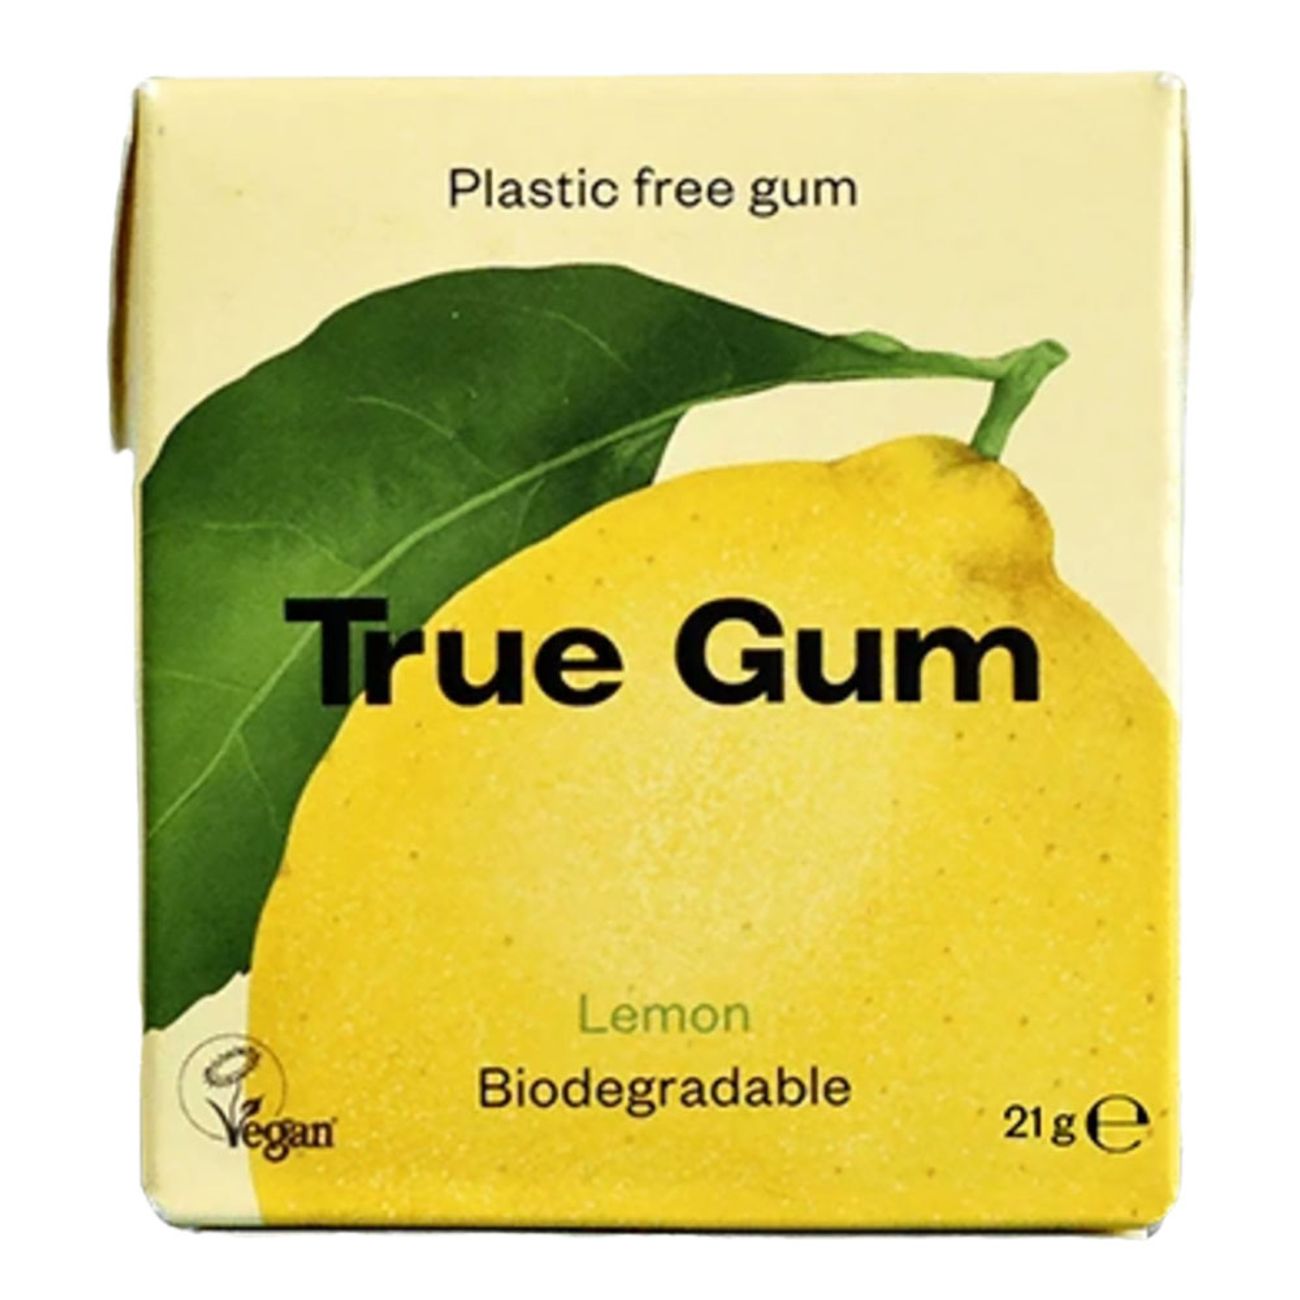 true-gum-lemon-80250-1